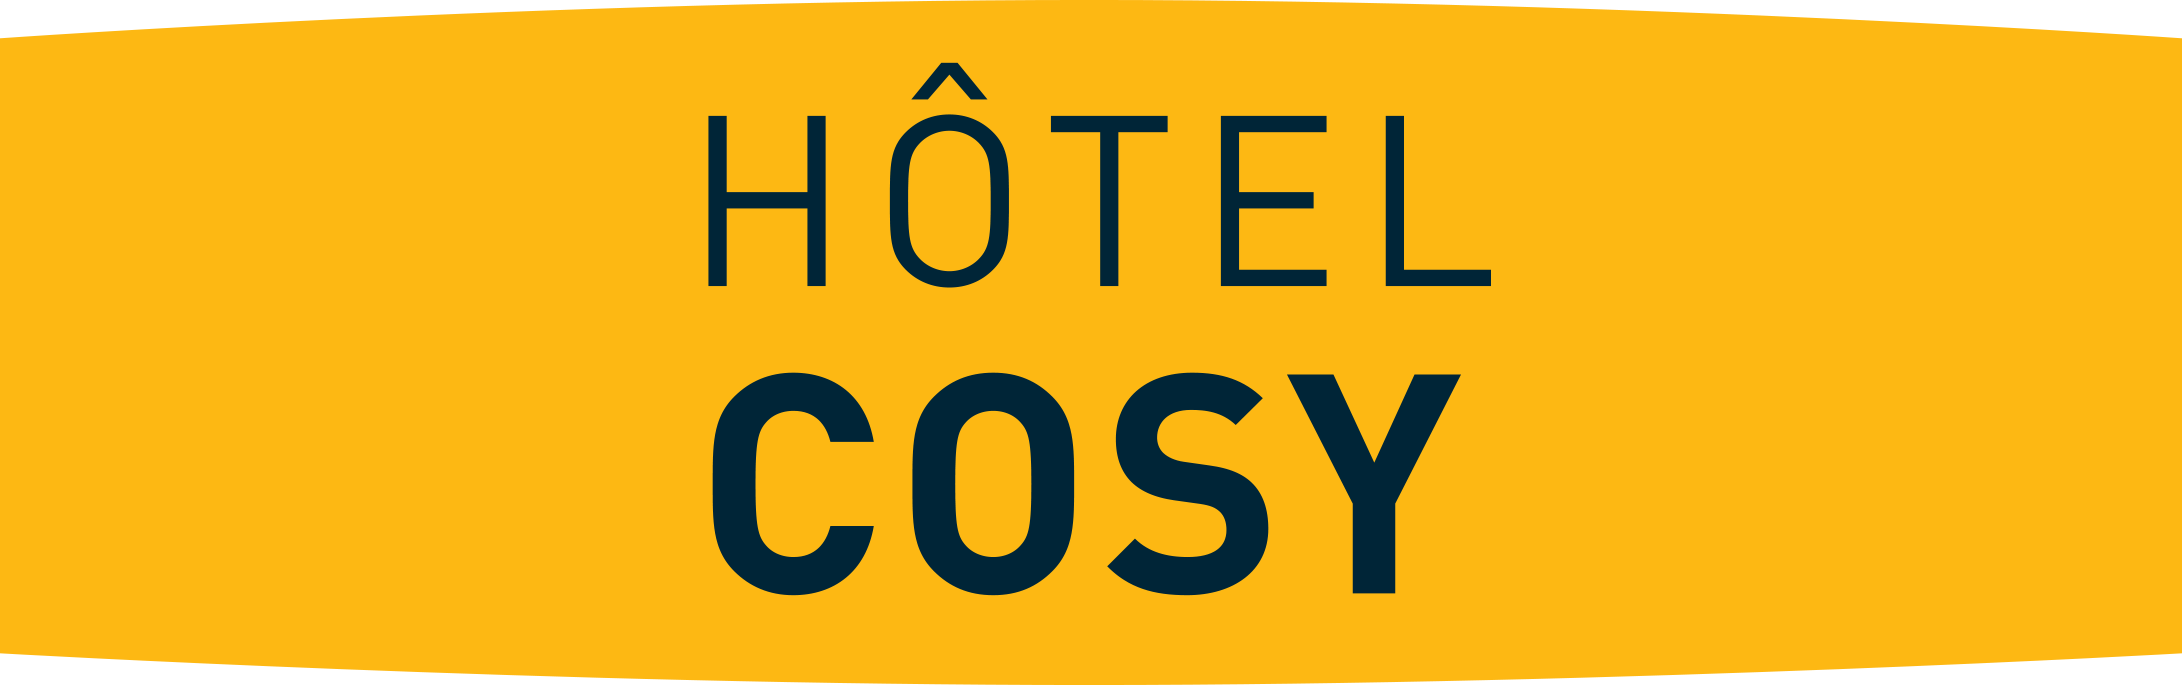 Hôtel COSY